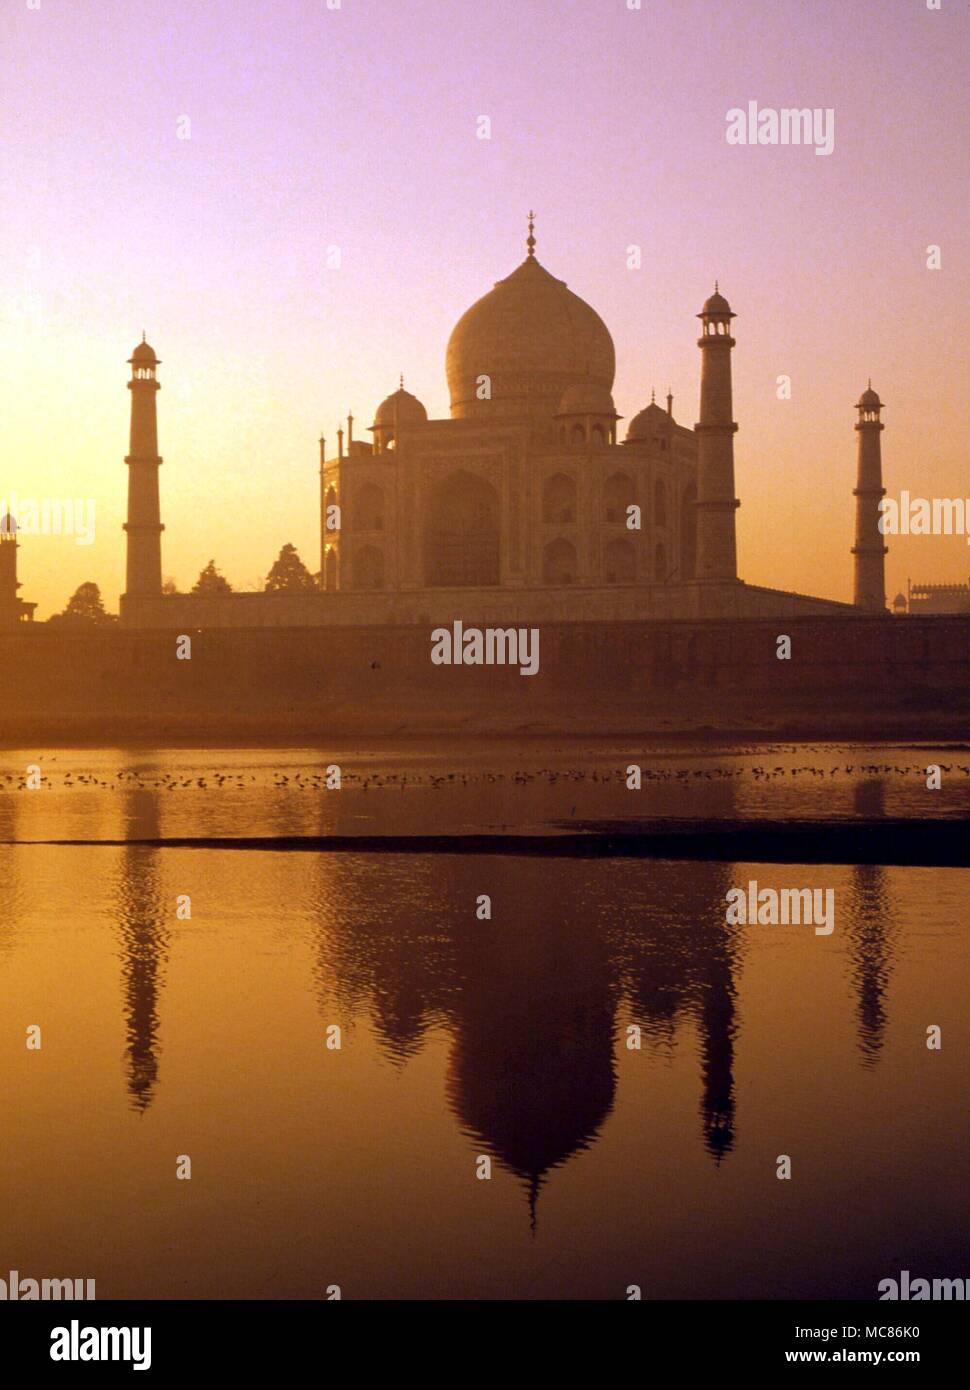 L'INDE Le Taj Mahal, construit par l'empereur moghol, Shah Jahan, en mémoire de son épouse favorite, Mumtaz Mahal, il est décrit comme le plus parfait, érigé à l'amour. Terminé 1653 Banque D'Images